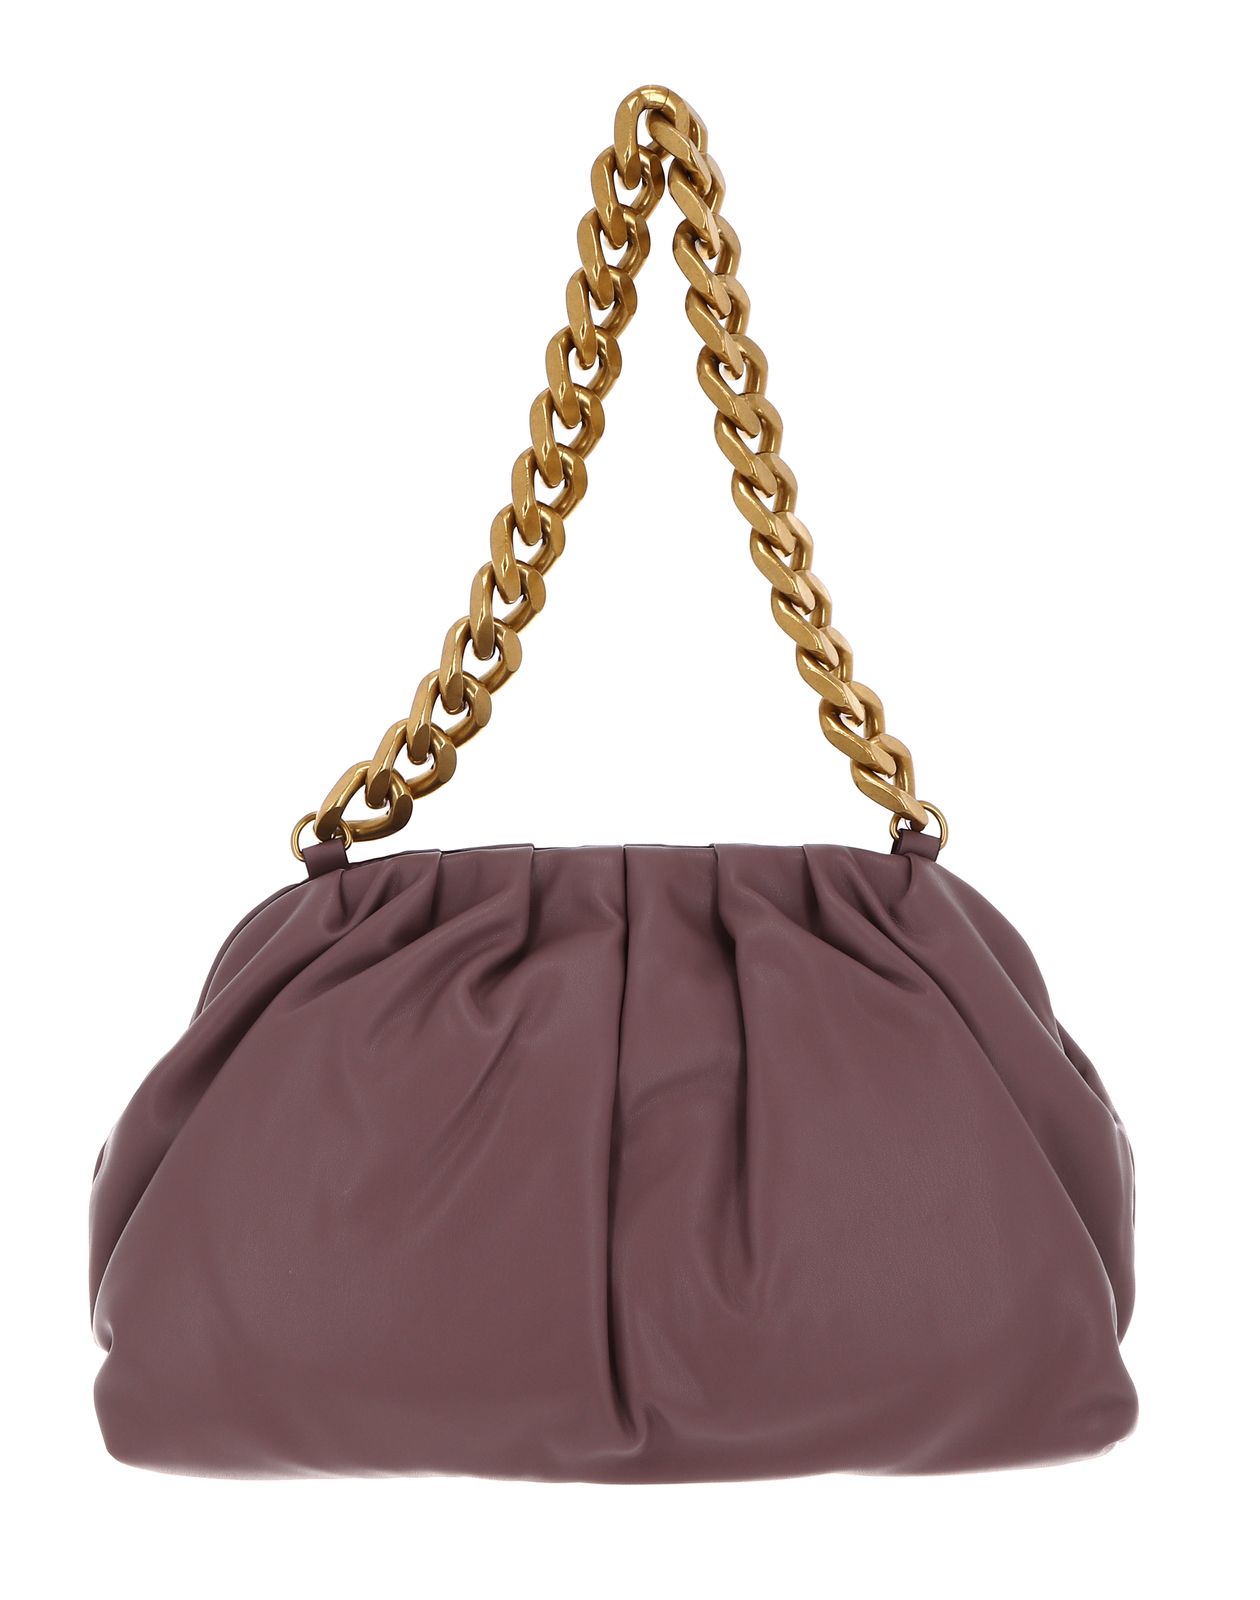 DKNY shoulder bag Presley PU Shoulder Bag Vntg Rose | Buy bags, purses ...